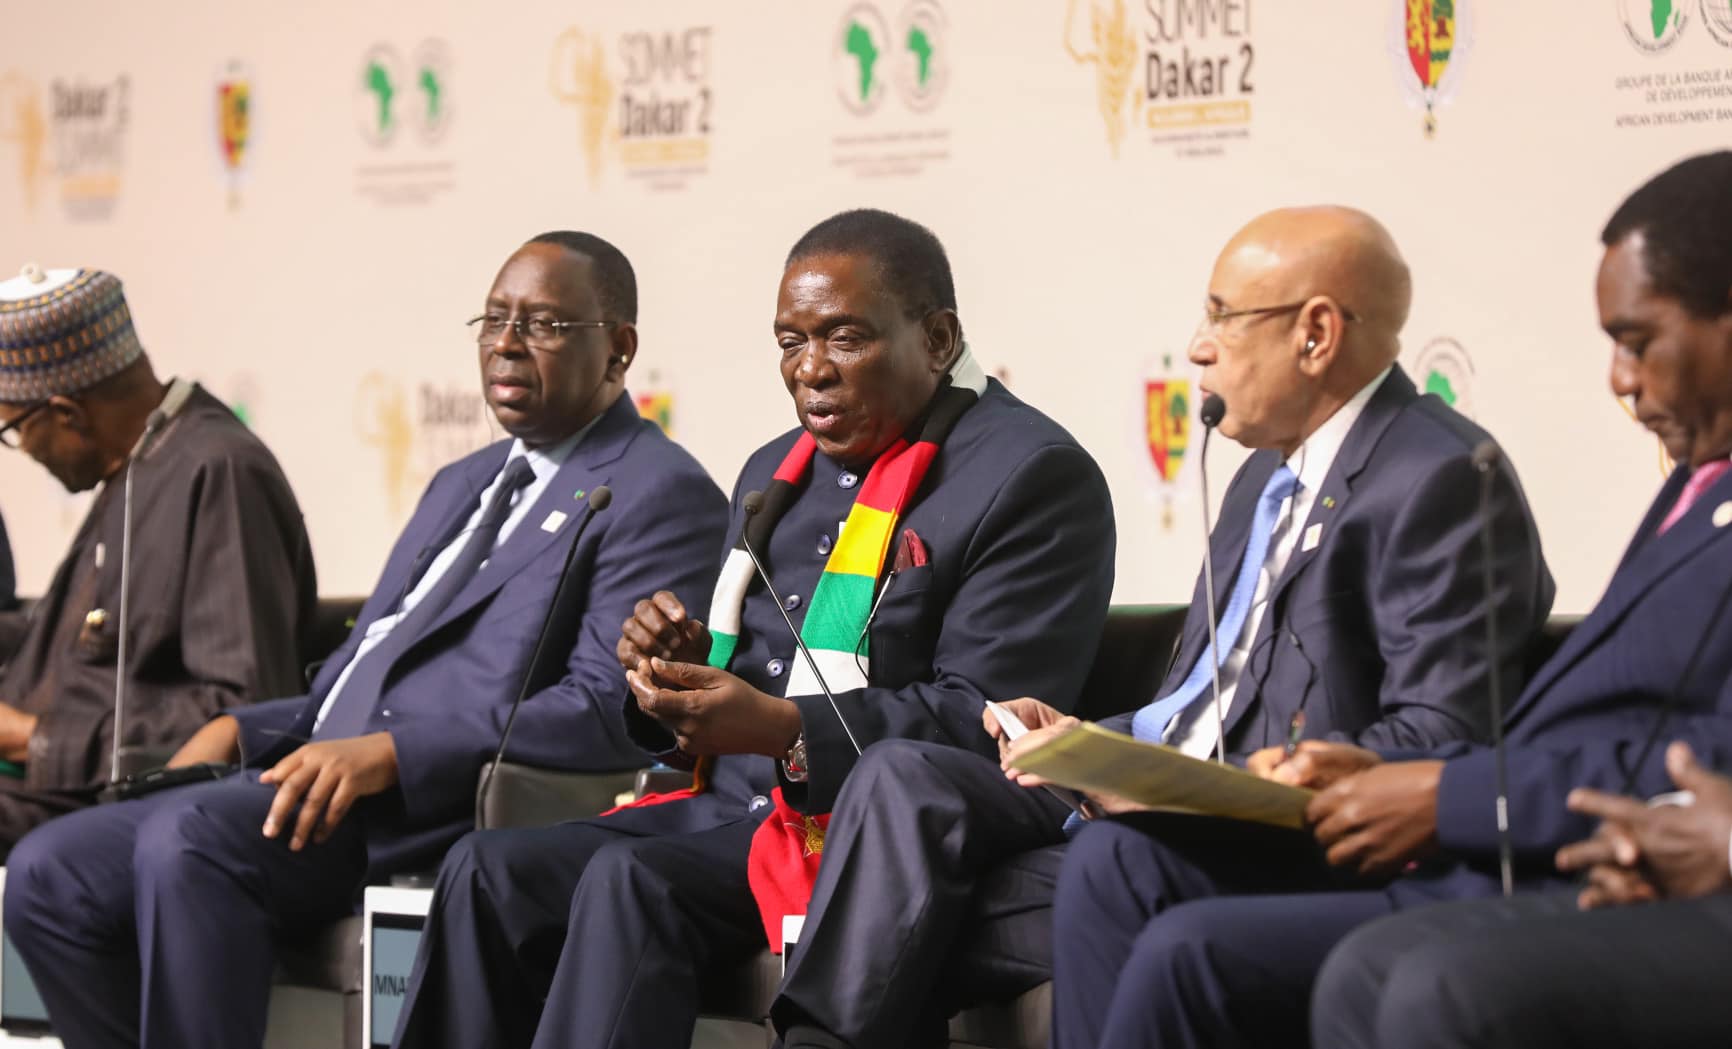 Forum Dakar 2: des chefs d’Etat africains s'engagent à faire de la souveraineté alimentaire une "priorité"